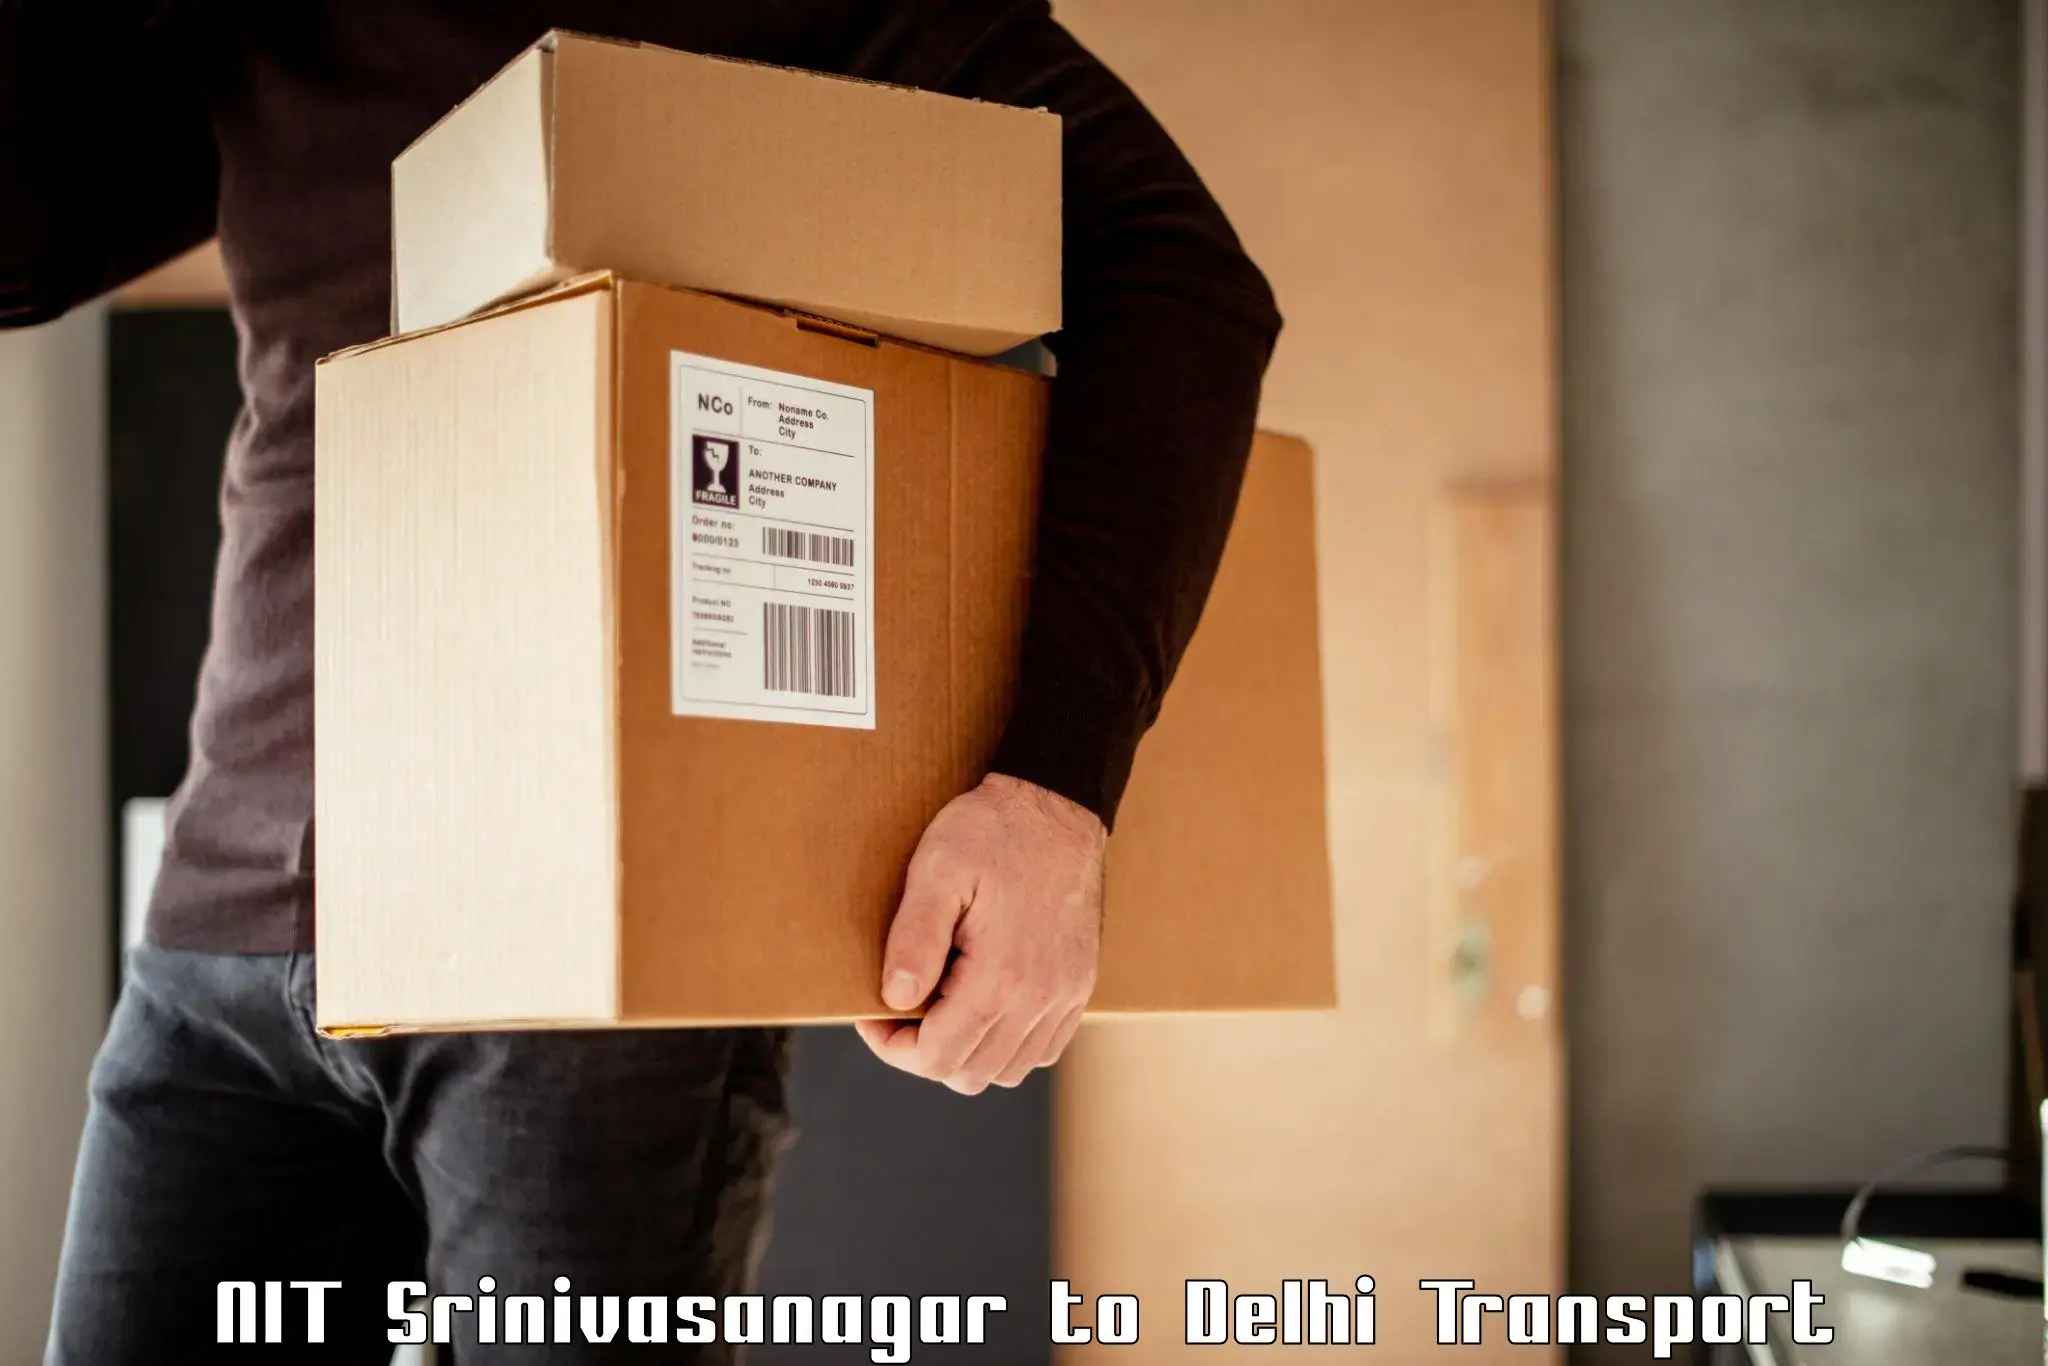 All India transport service NIT Srinivasanagar to Sansad Marg